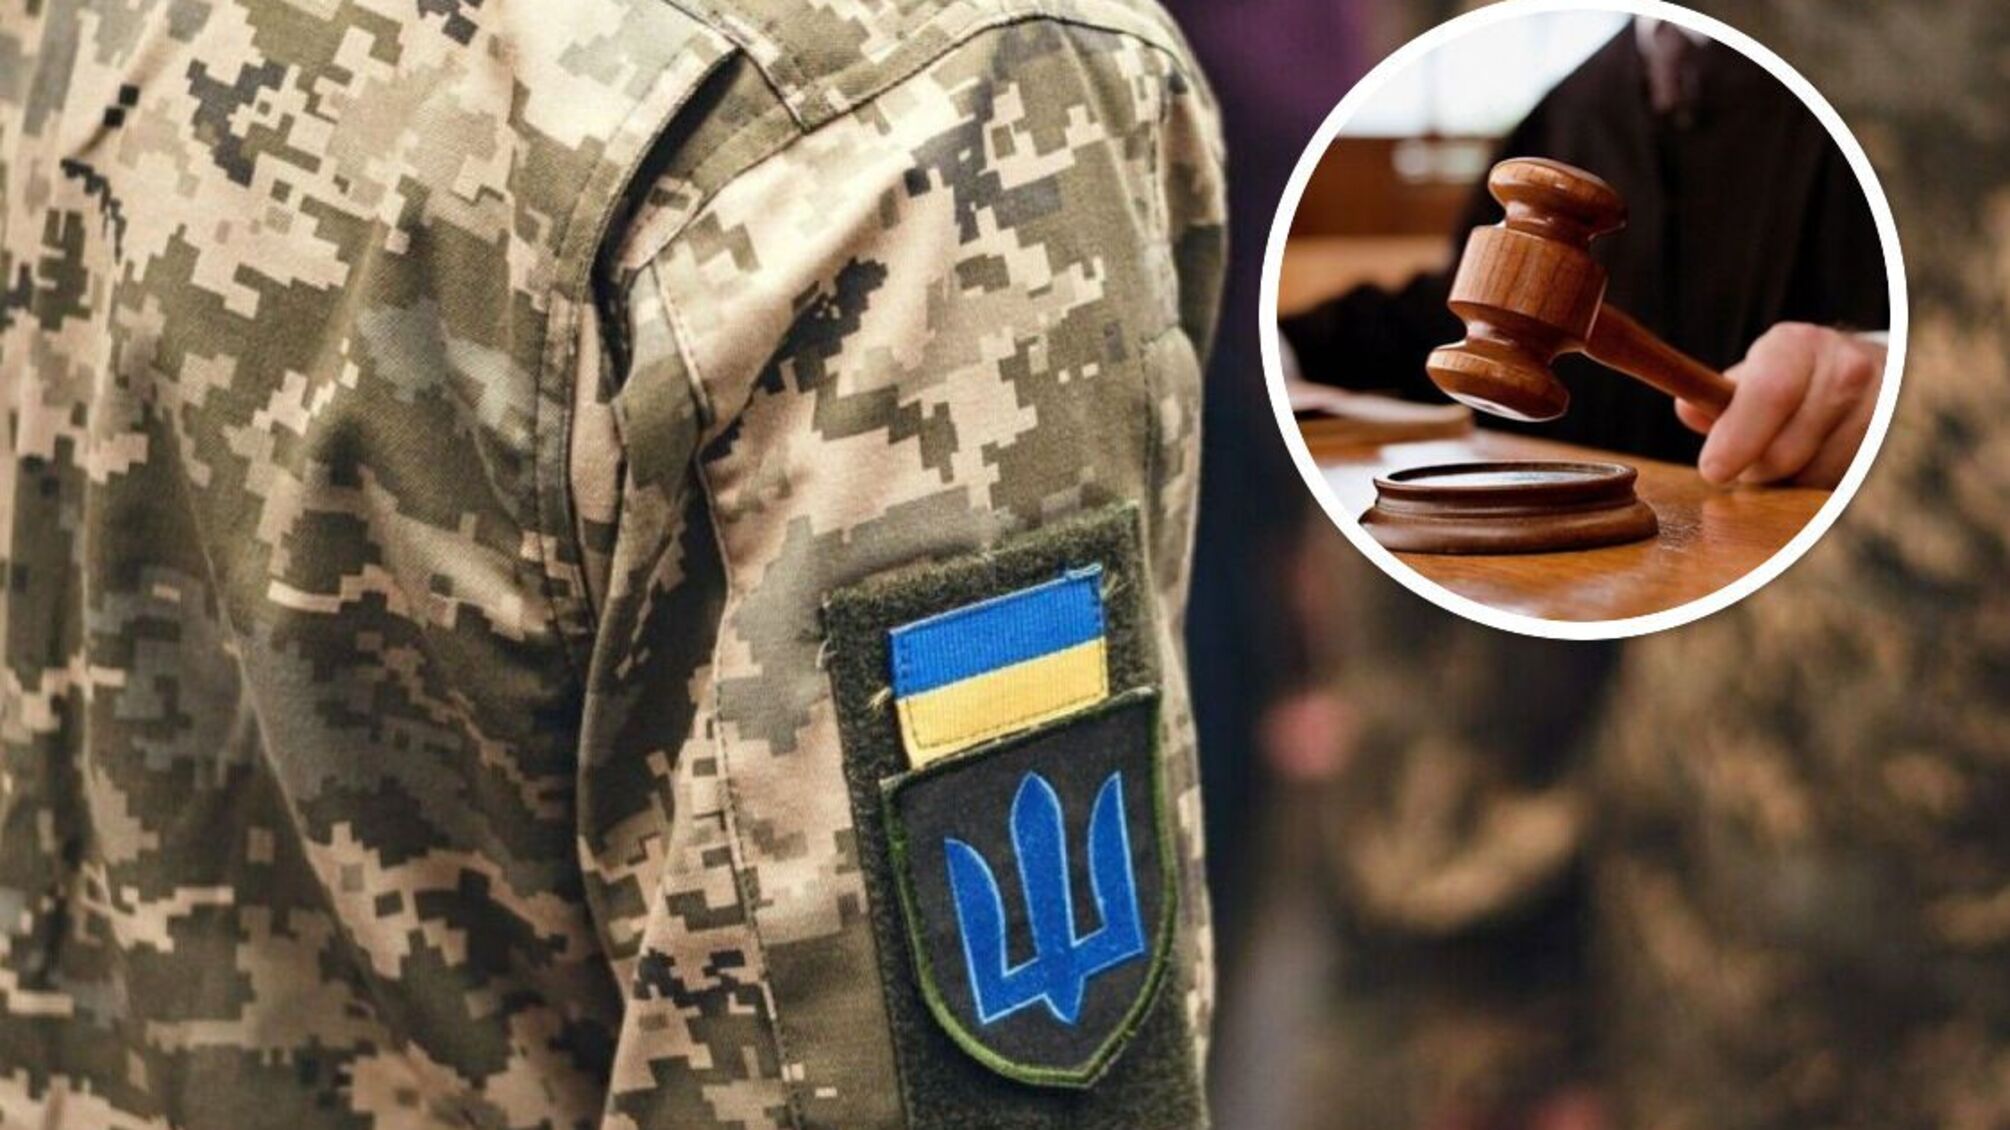 Собрал более 1 млн грн с подчиненных: будут судить военного чиновника из Харьковщины